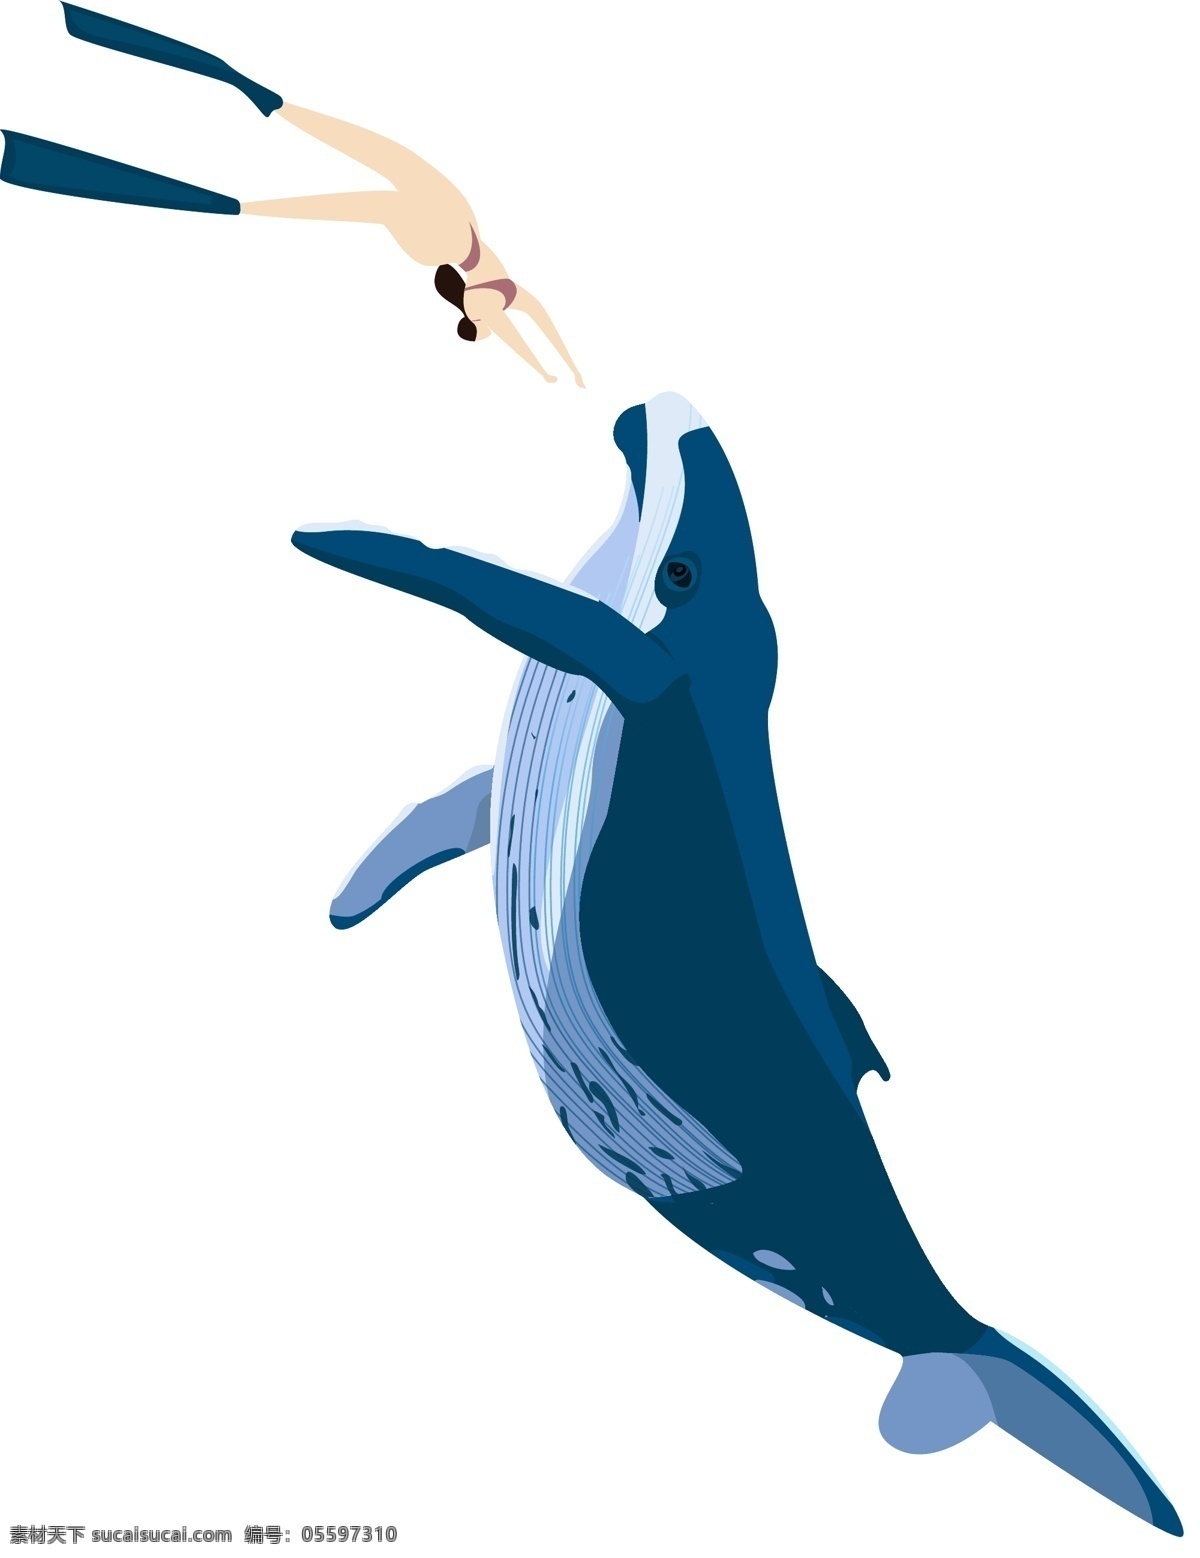 驯养 员 鲸鱼 水中 表演 手绘 卡通 蓝色鲸鱼 海洋生物 驯养员 水中表演